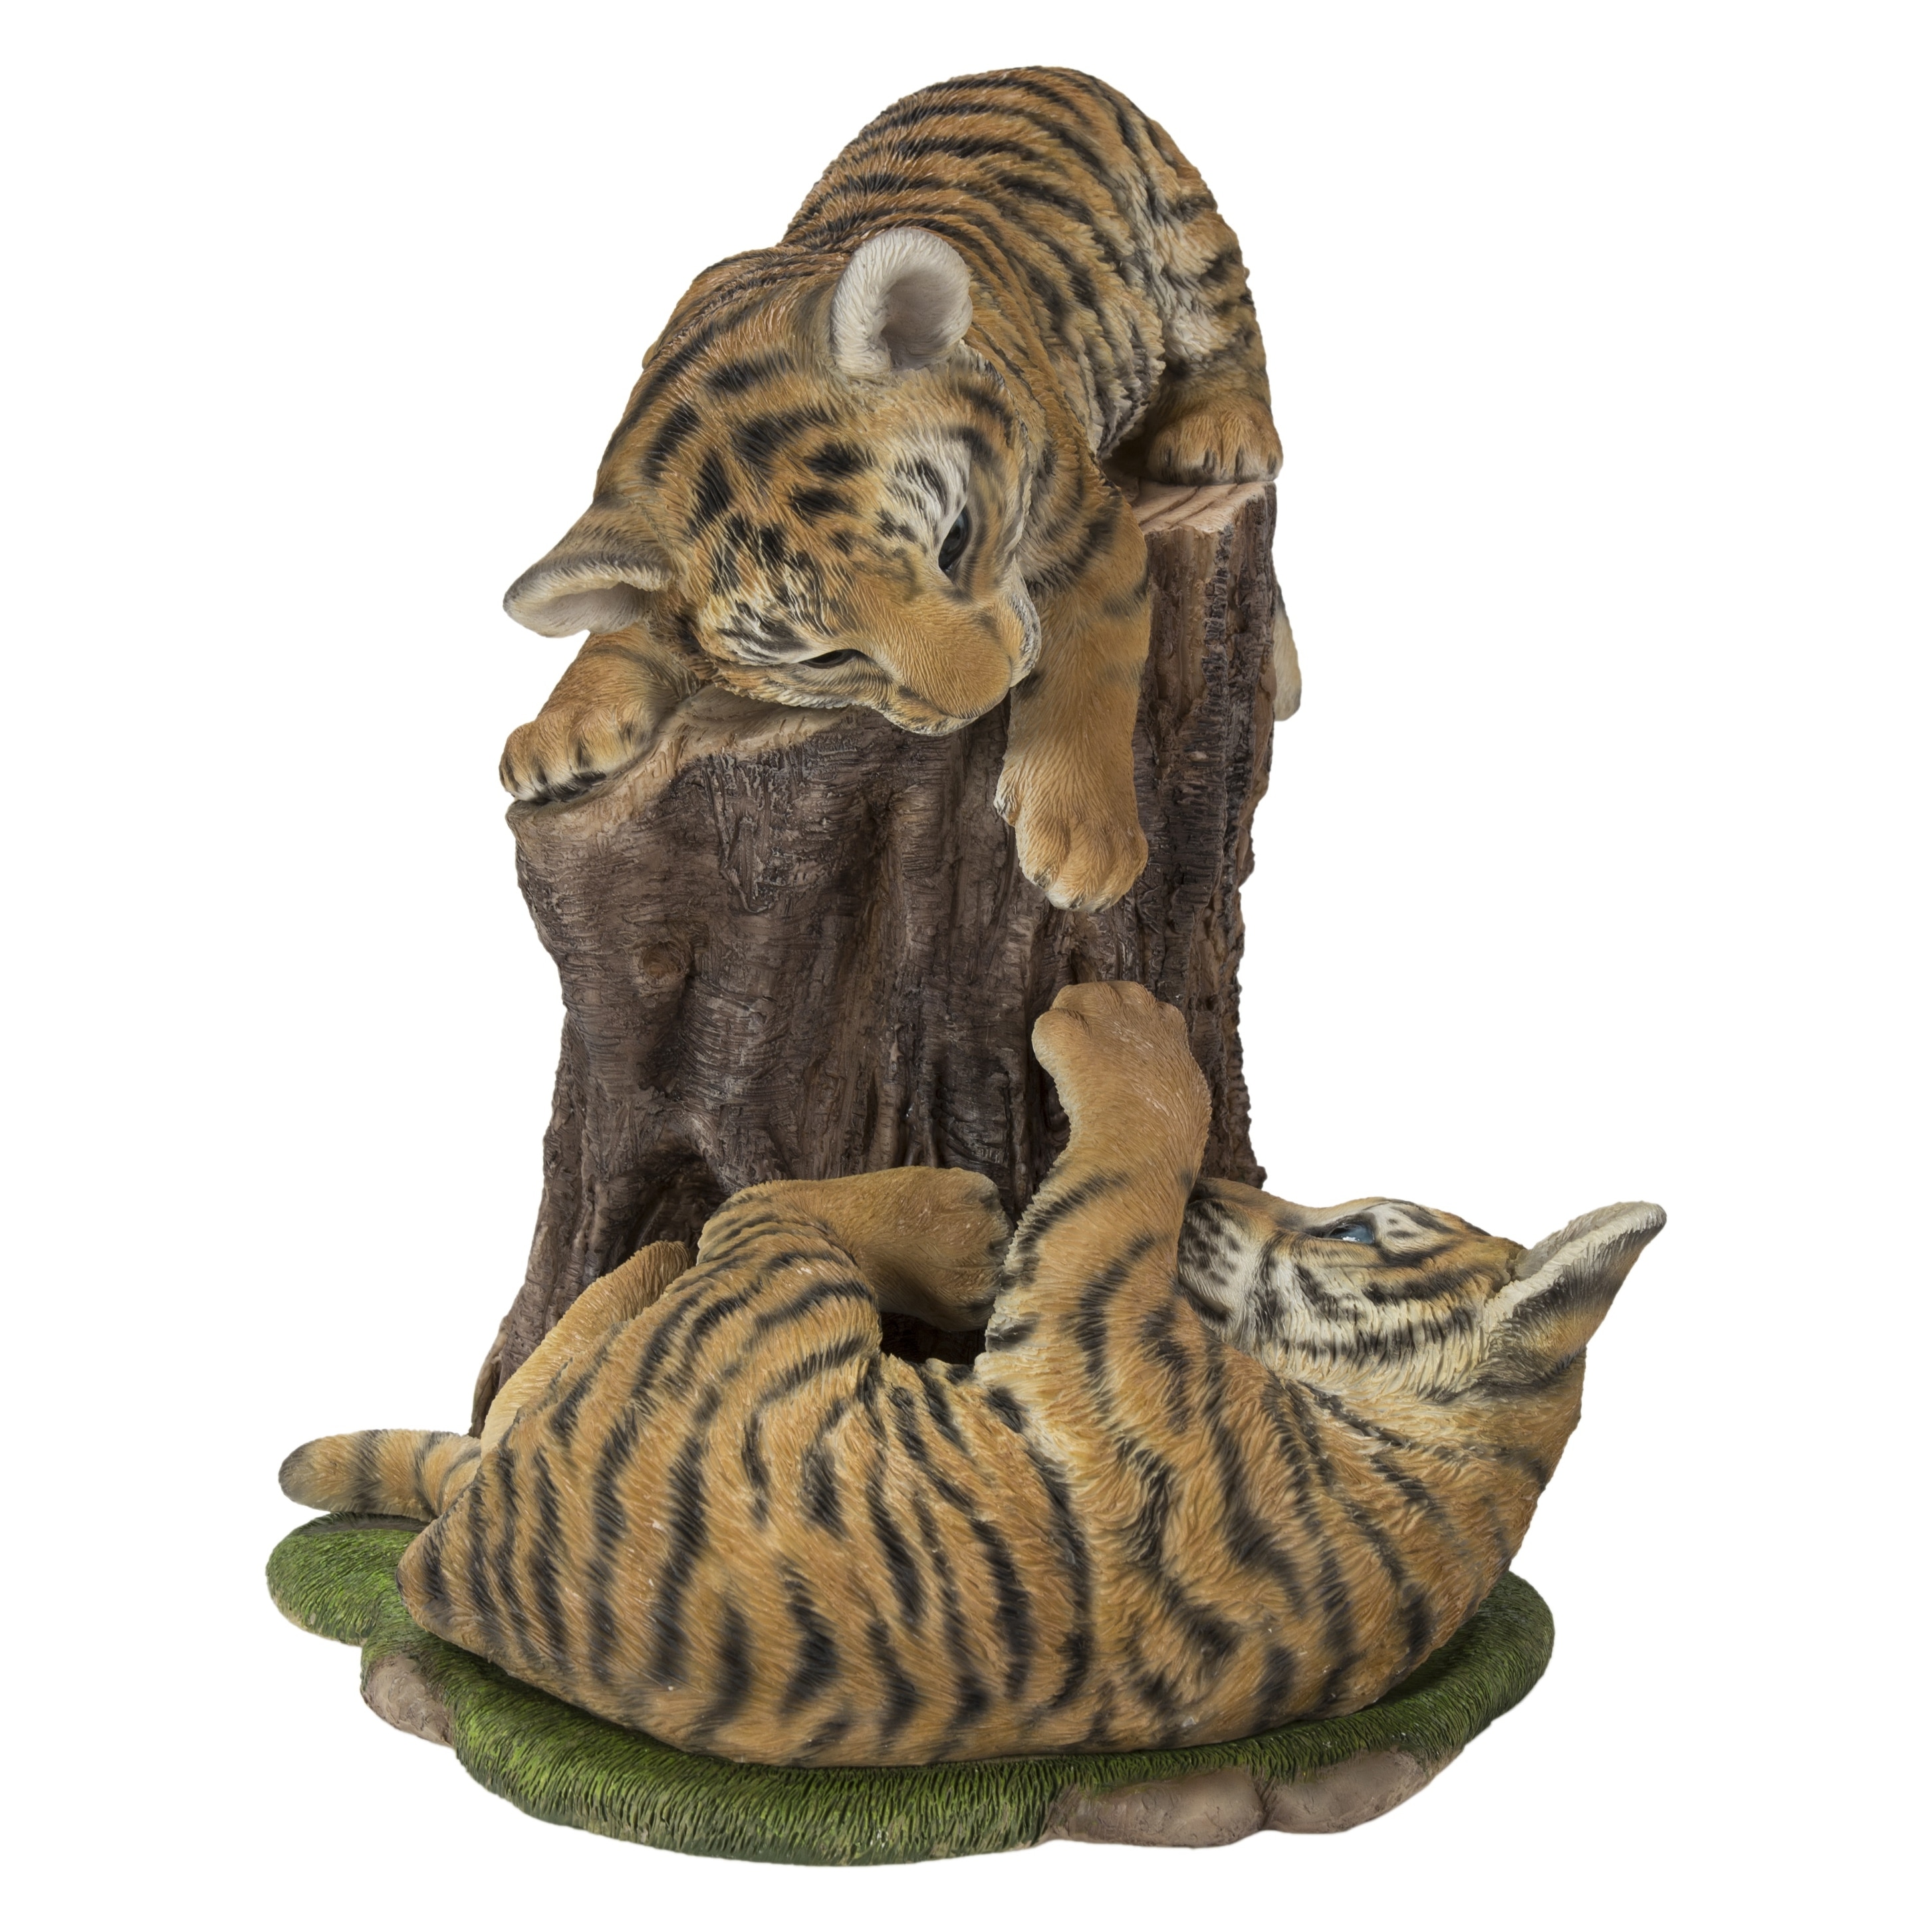 Playful Tiger Cubs - On Sale - Bed Bath & Beyond - 35453804